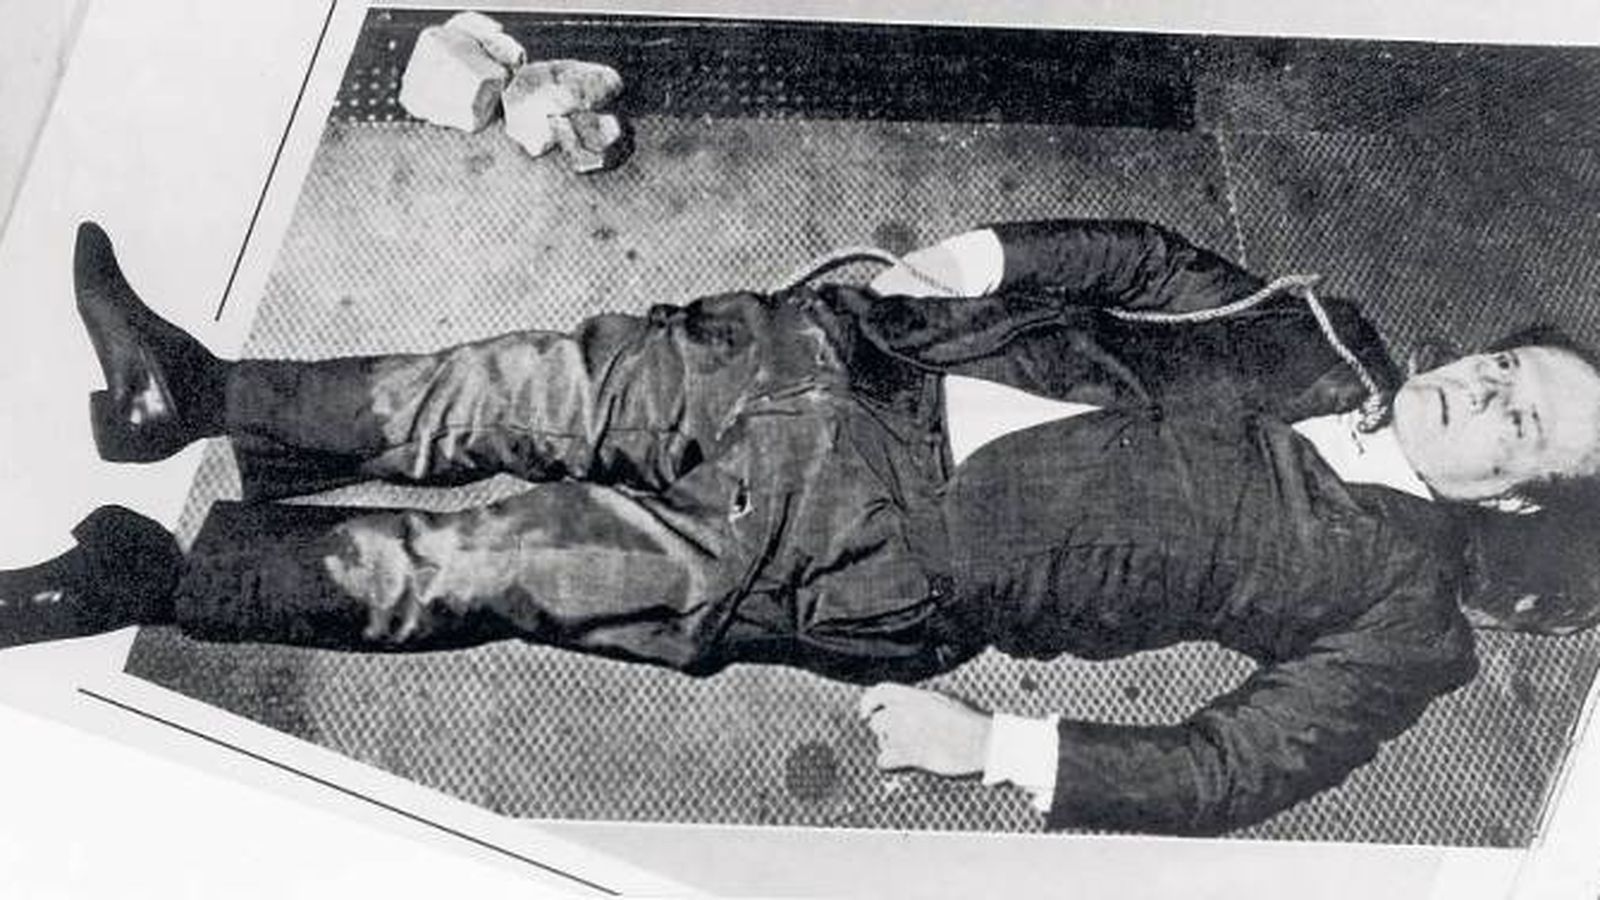 Foto: El cuerpo de Roberto Calvi minutos después de que fuese encontrado colgando en el puente de Blackfriars en Londres.